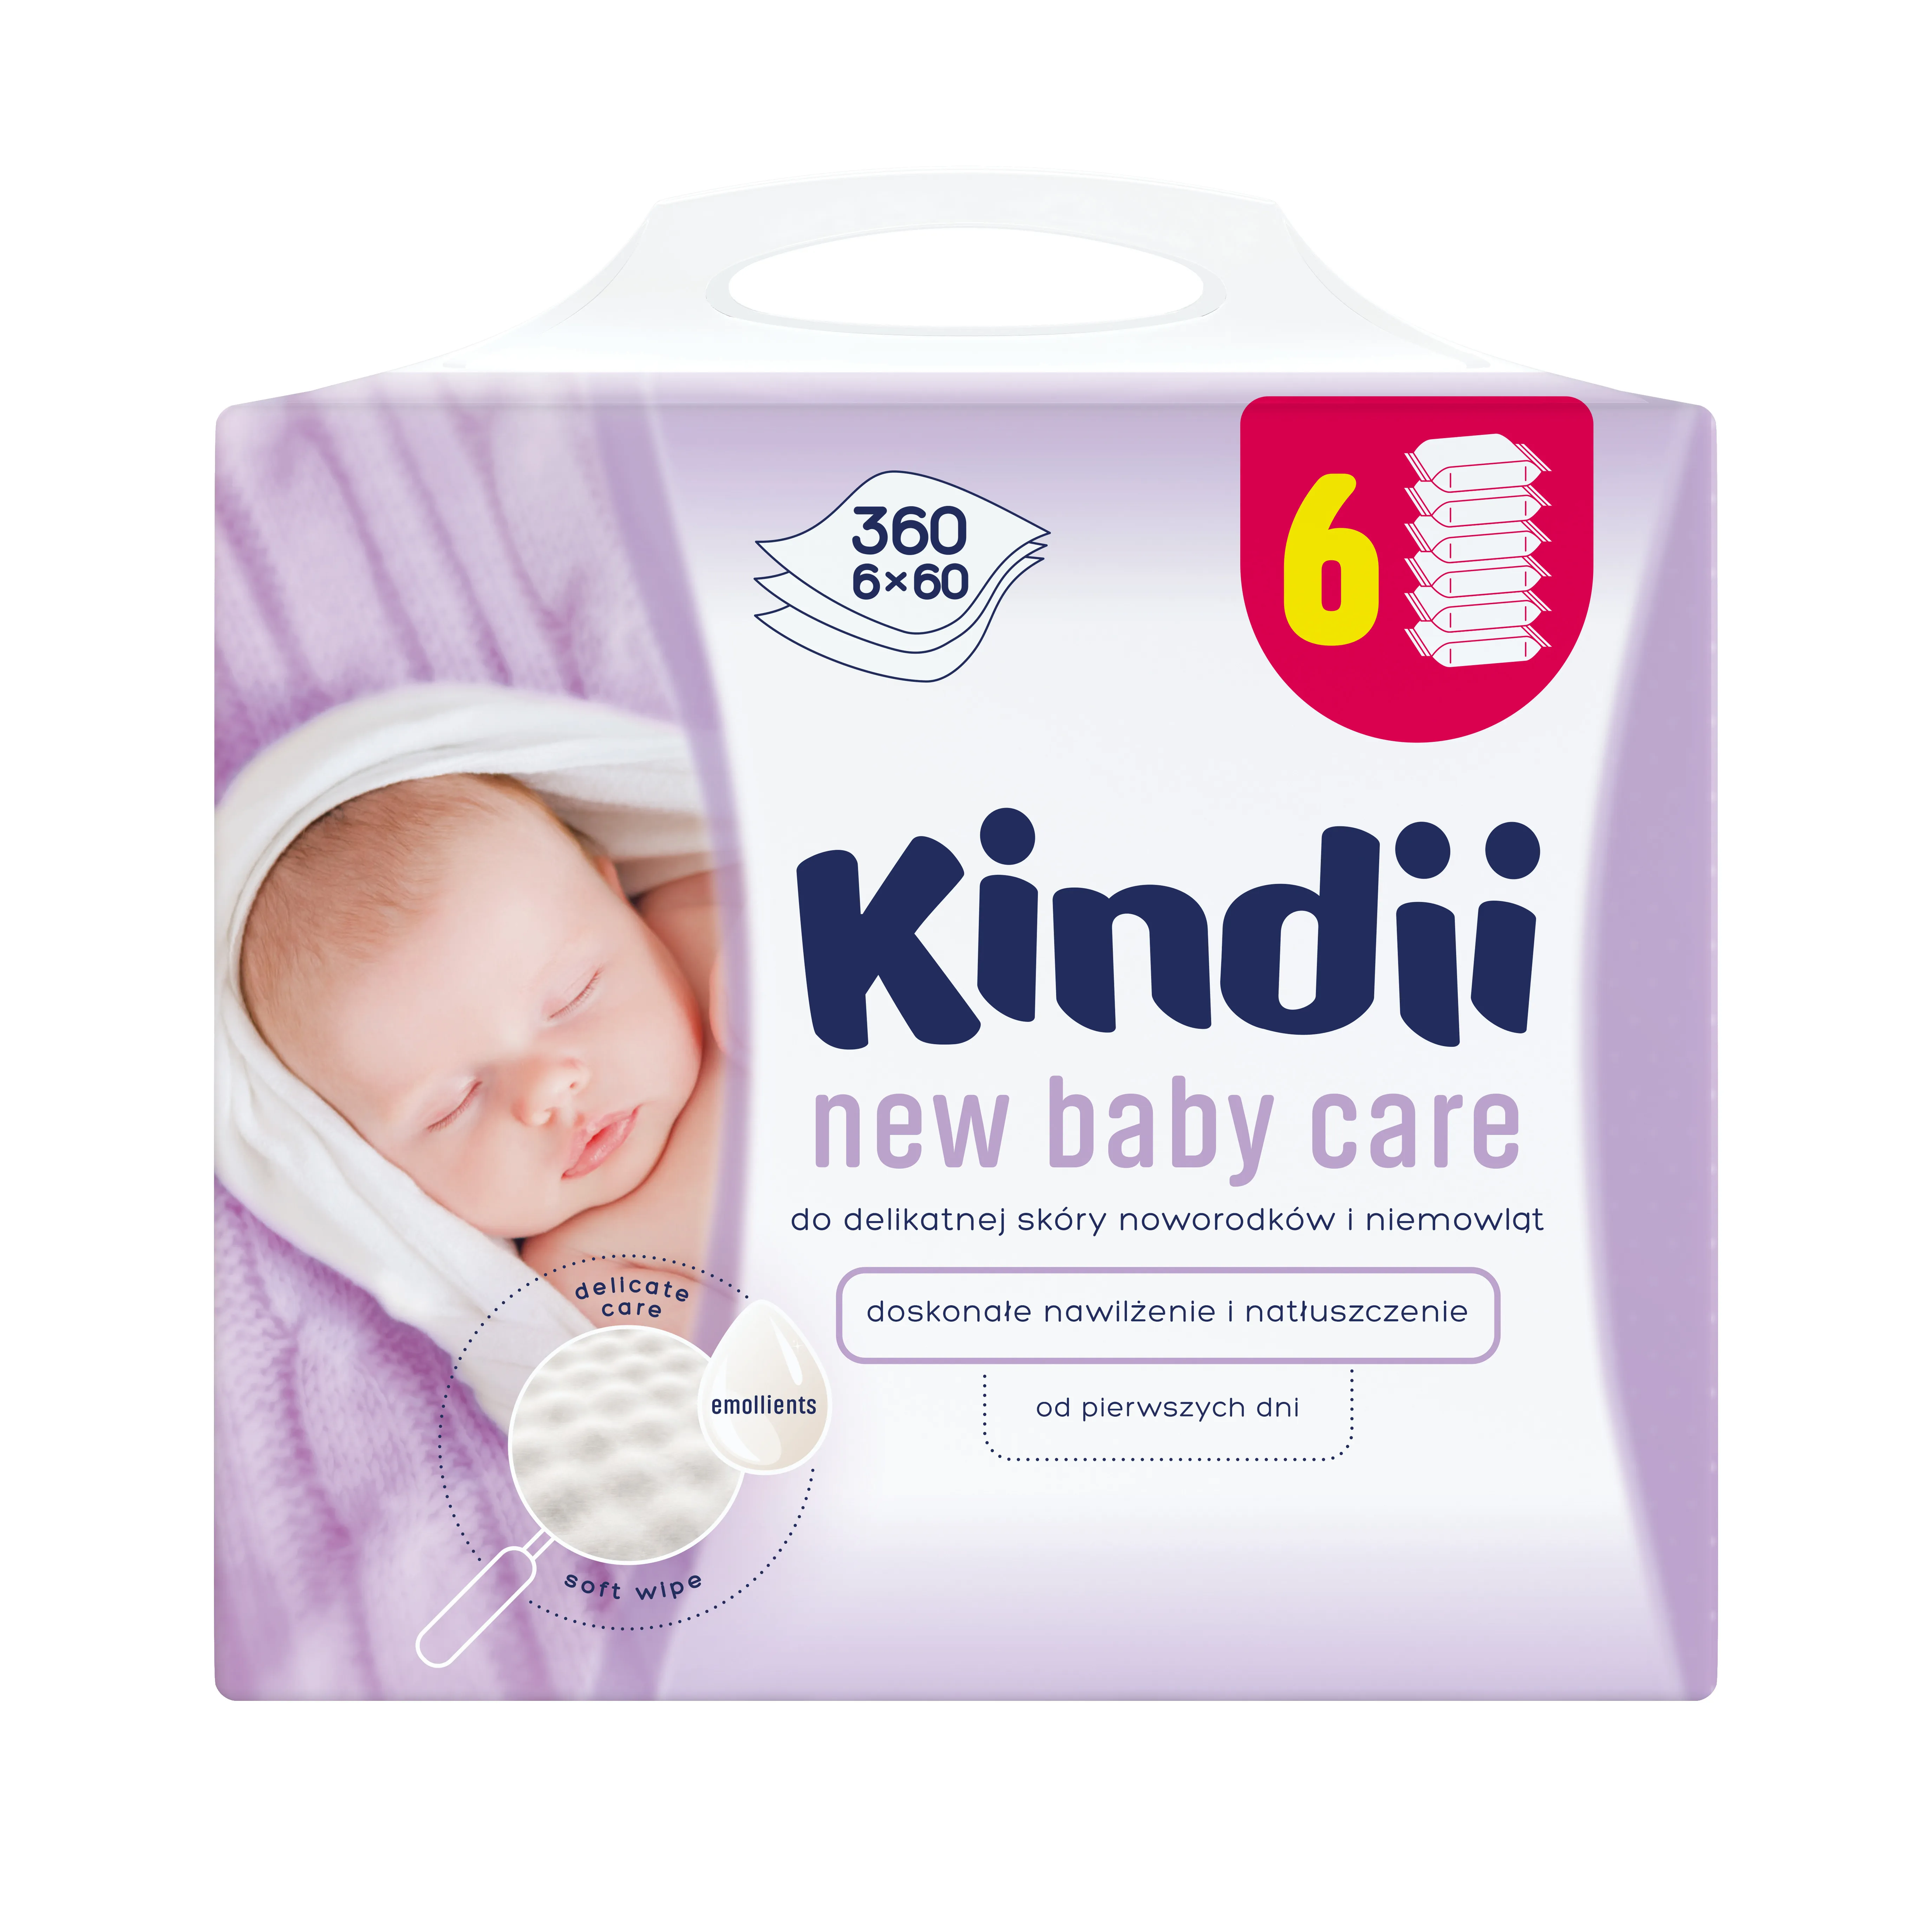 Kindii New Baby Care, chusteczki dla niemowląt do skóry delikatnej, 360 sztuk